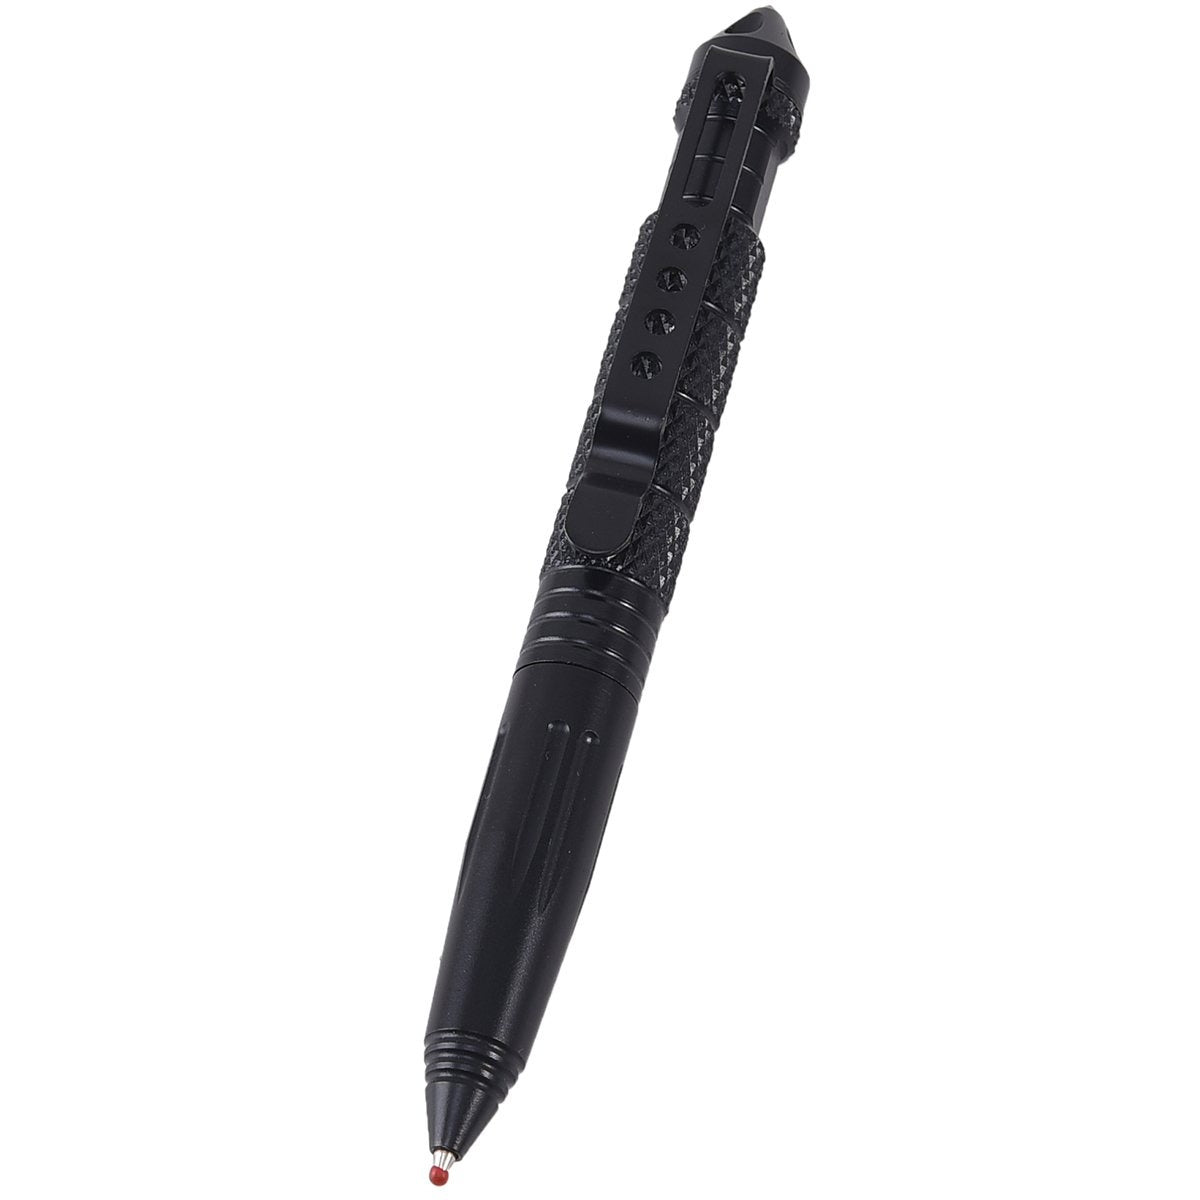 Black Tactical Pen